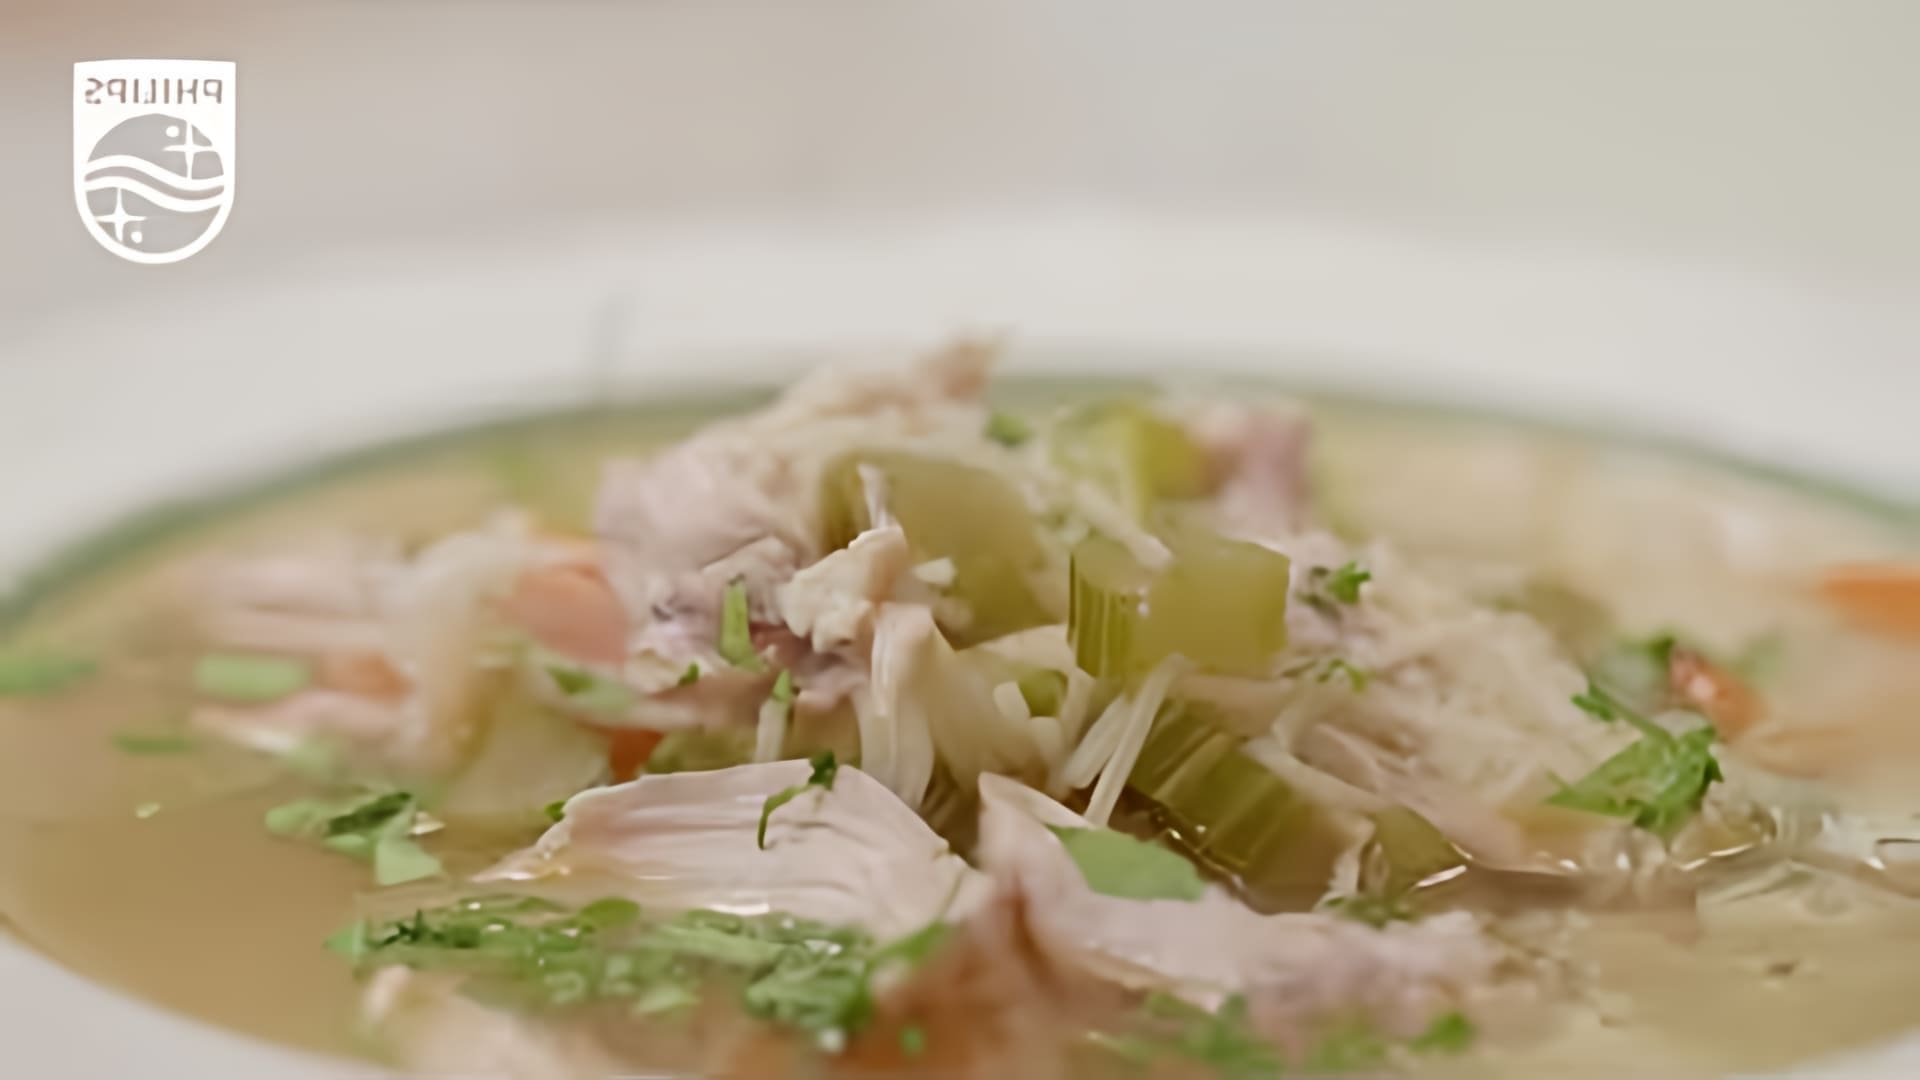 "Пилешка супа" - это видео-ролик, который показывает, как правильно приготовить суп с курицей